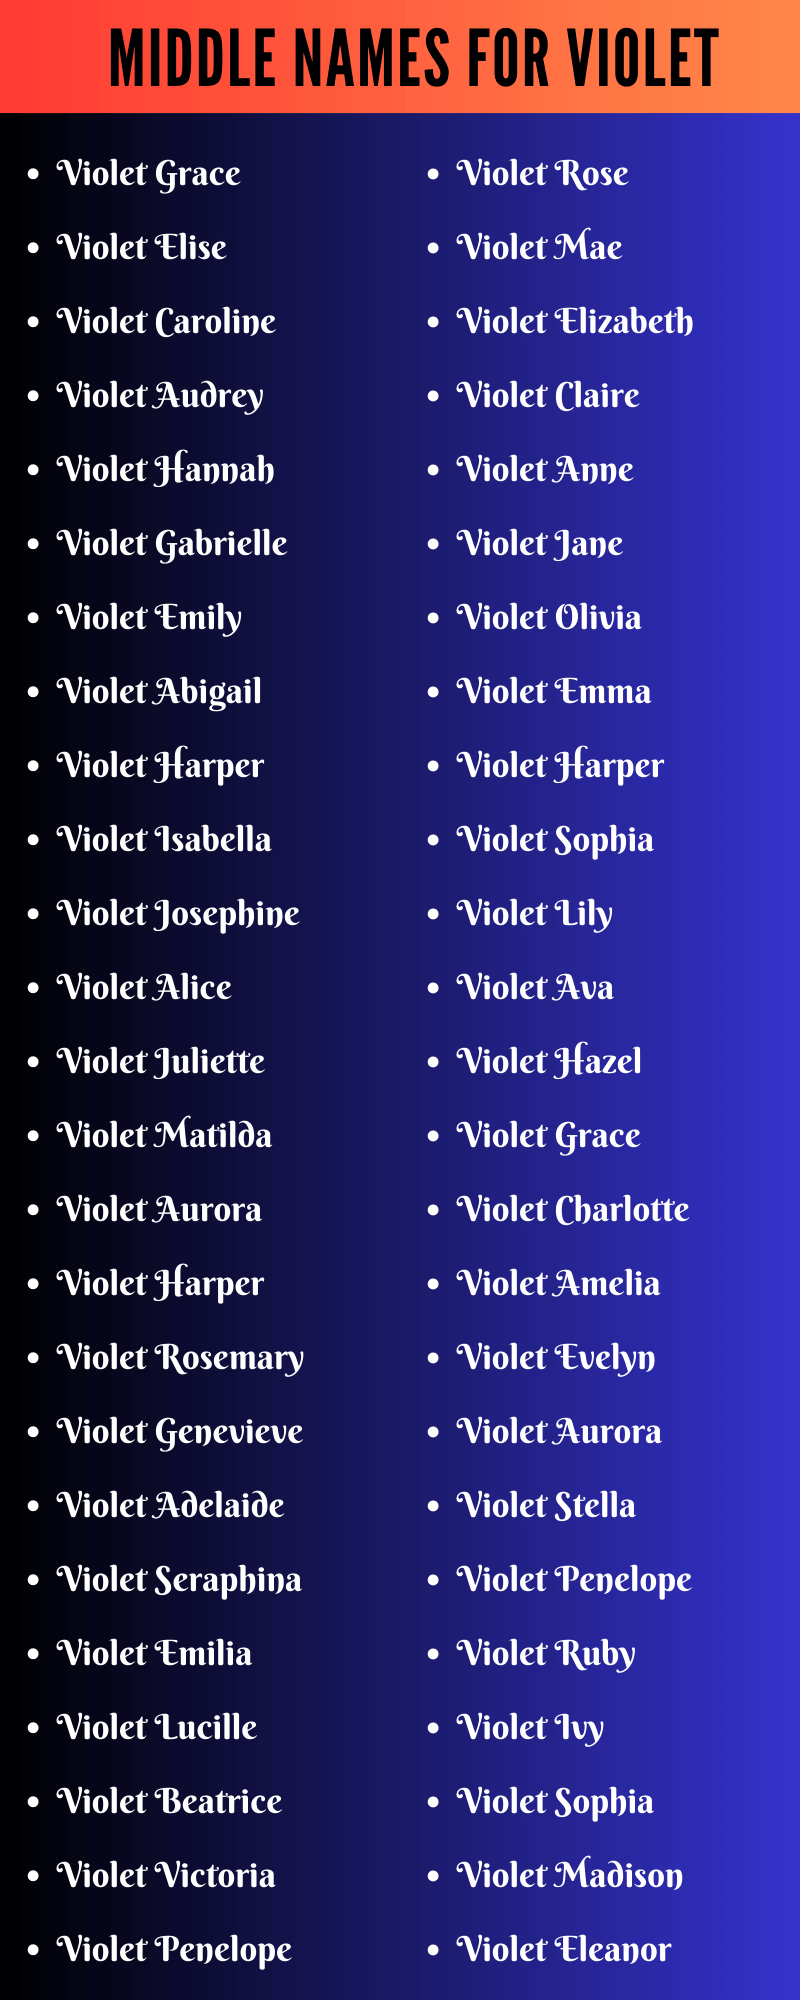 Middle Names For Violet